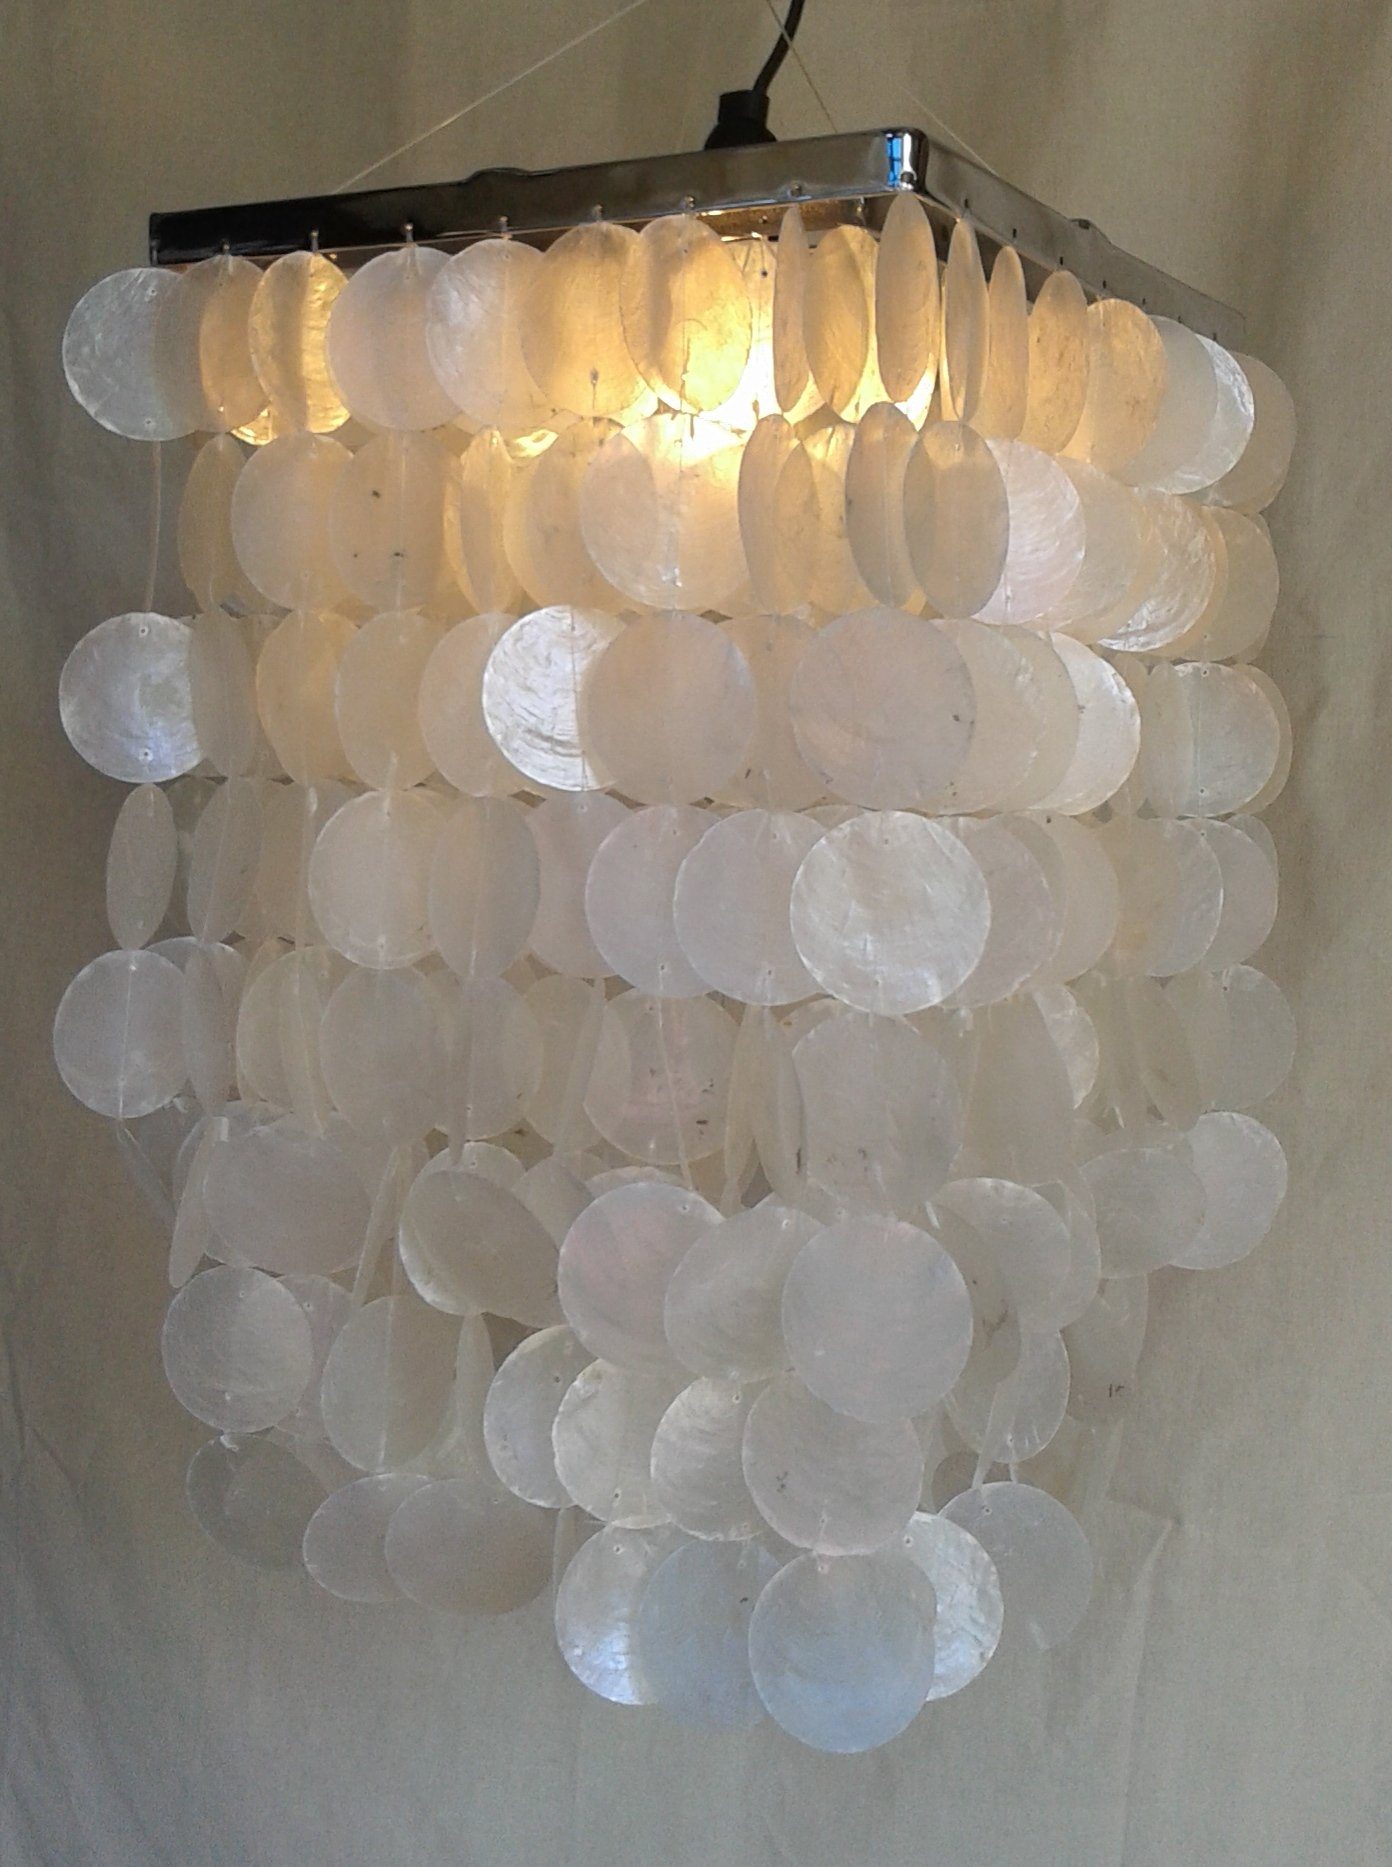 Guru-Shop Deckenleuchten Deckenlampe, Muschelleuchte aus Modell chrome hunderten.., Sabah nicht inklusive Leuchtmittel